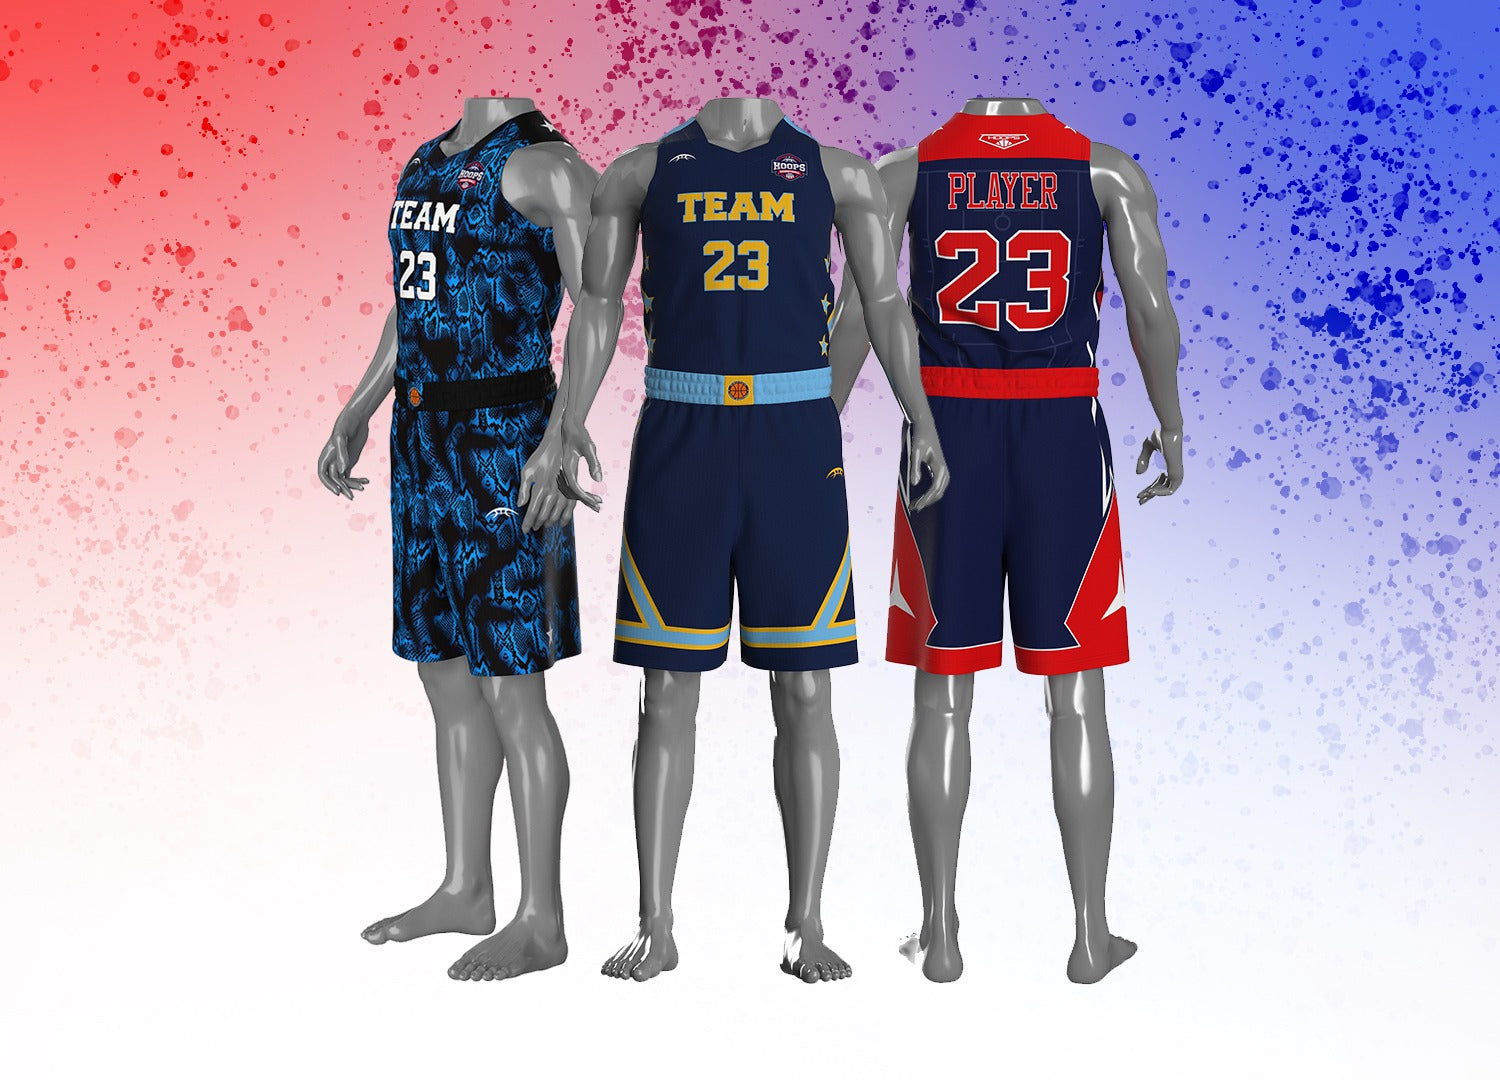 Custom Basketball Jersey, Personalized Basketball Jersey